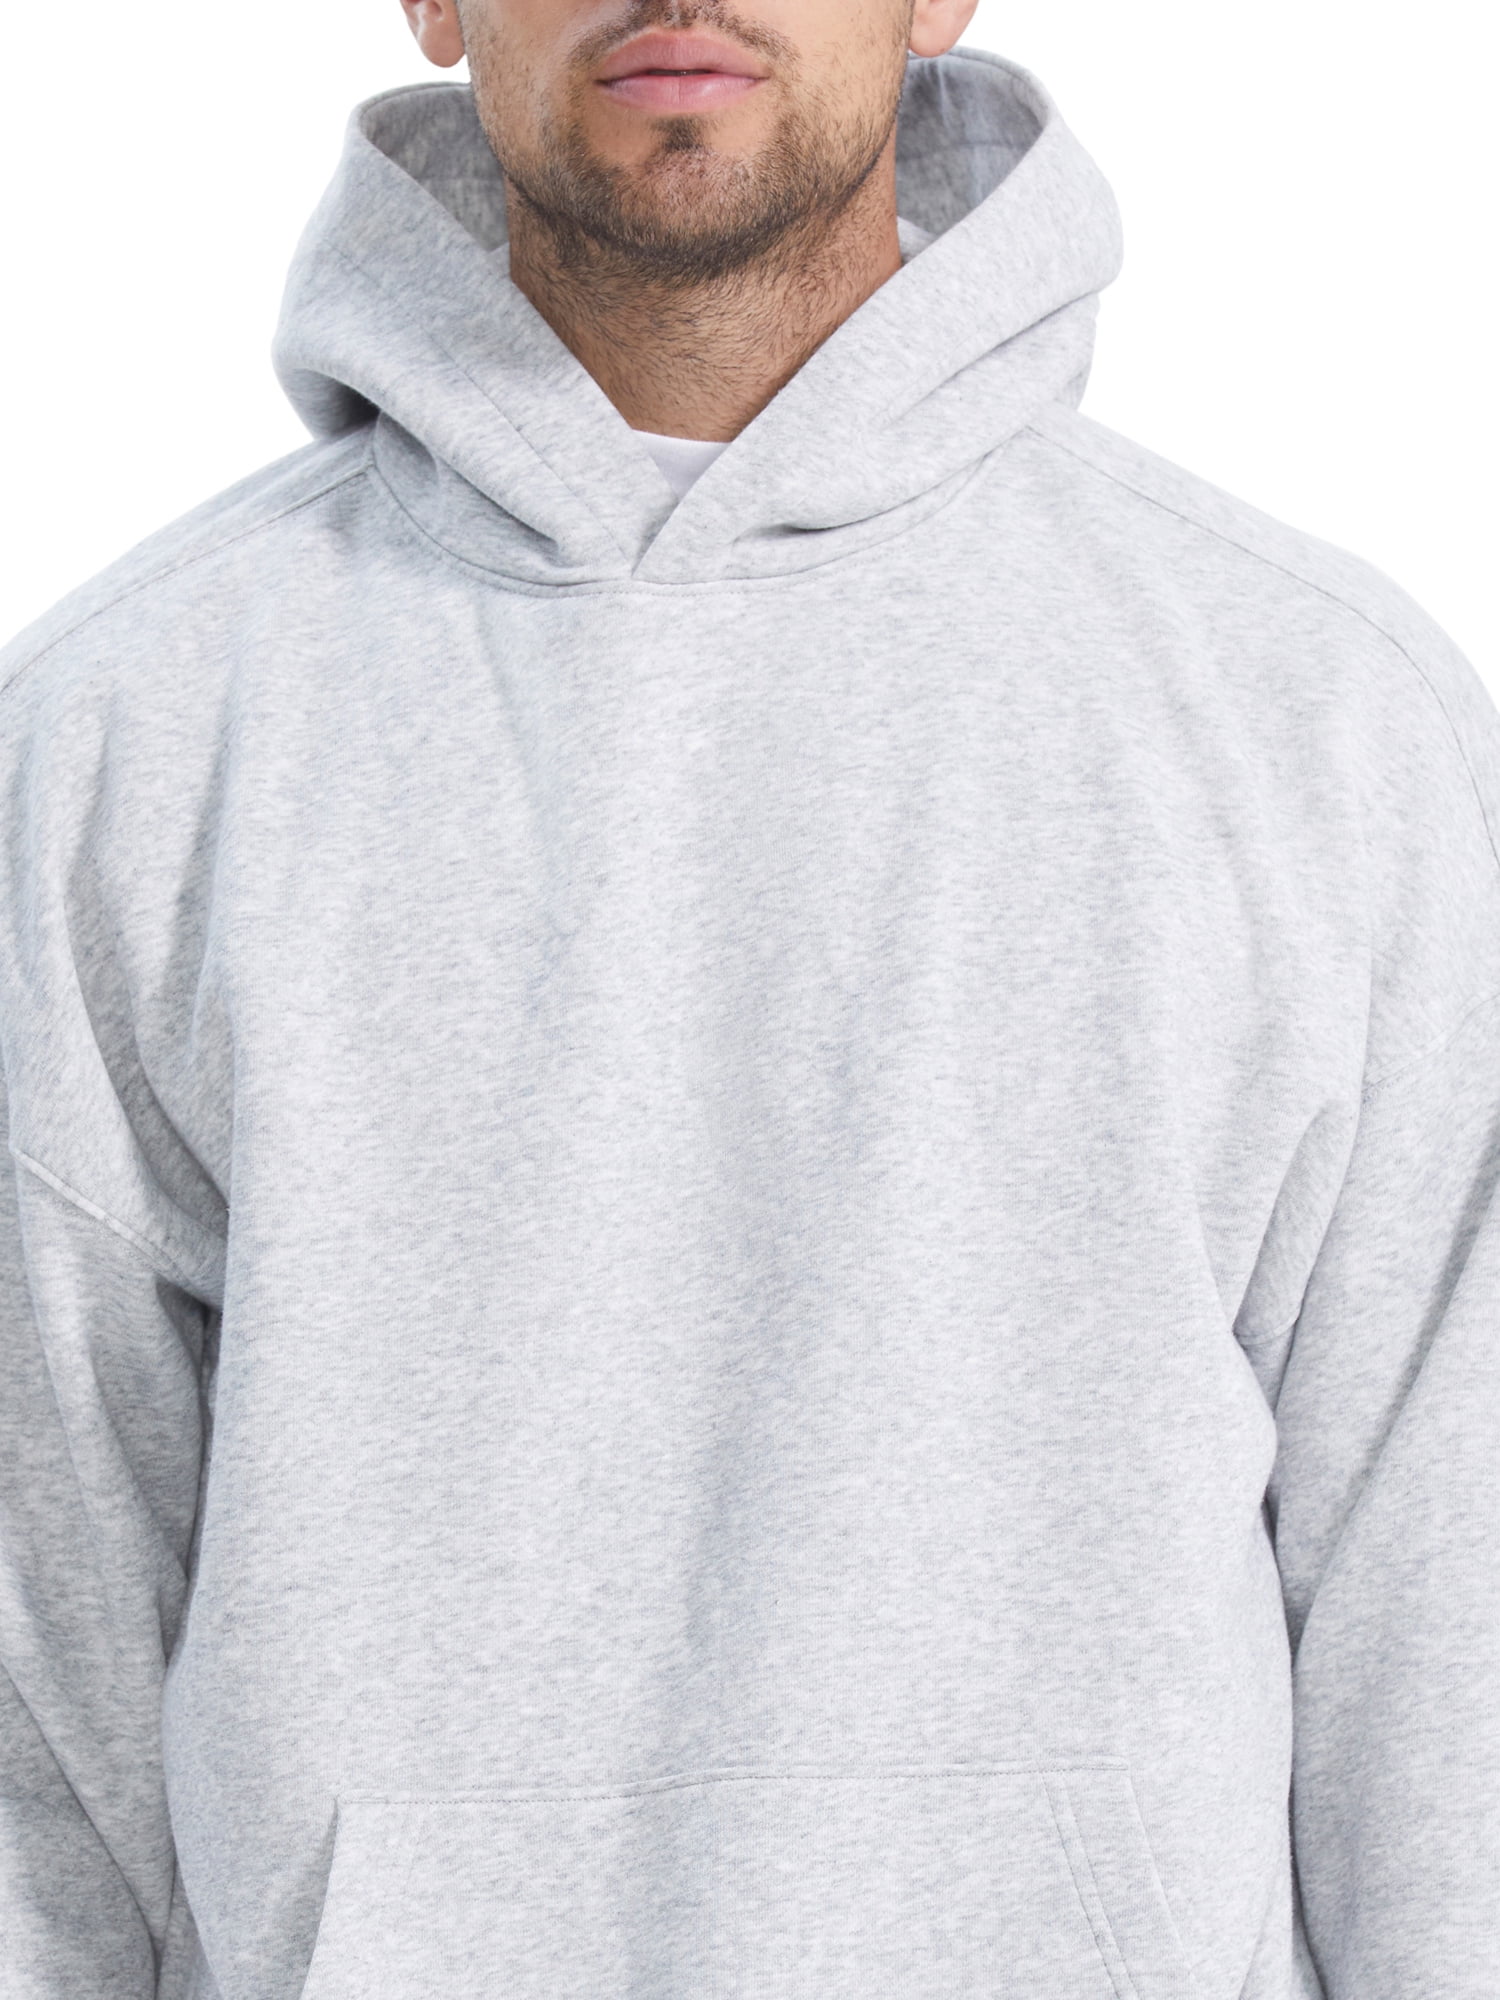 No Boundaries All Gender Oversize Hoodie Sweatshirt, Men's Sizes XS - 5XL